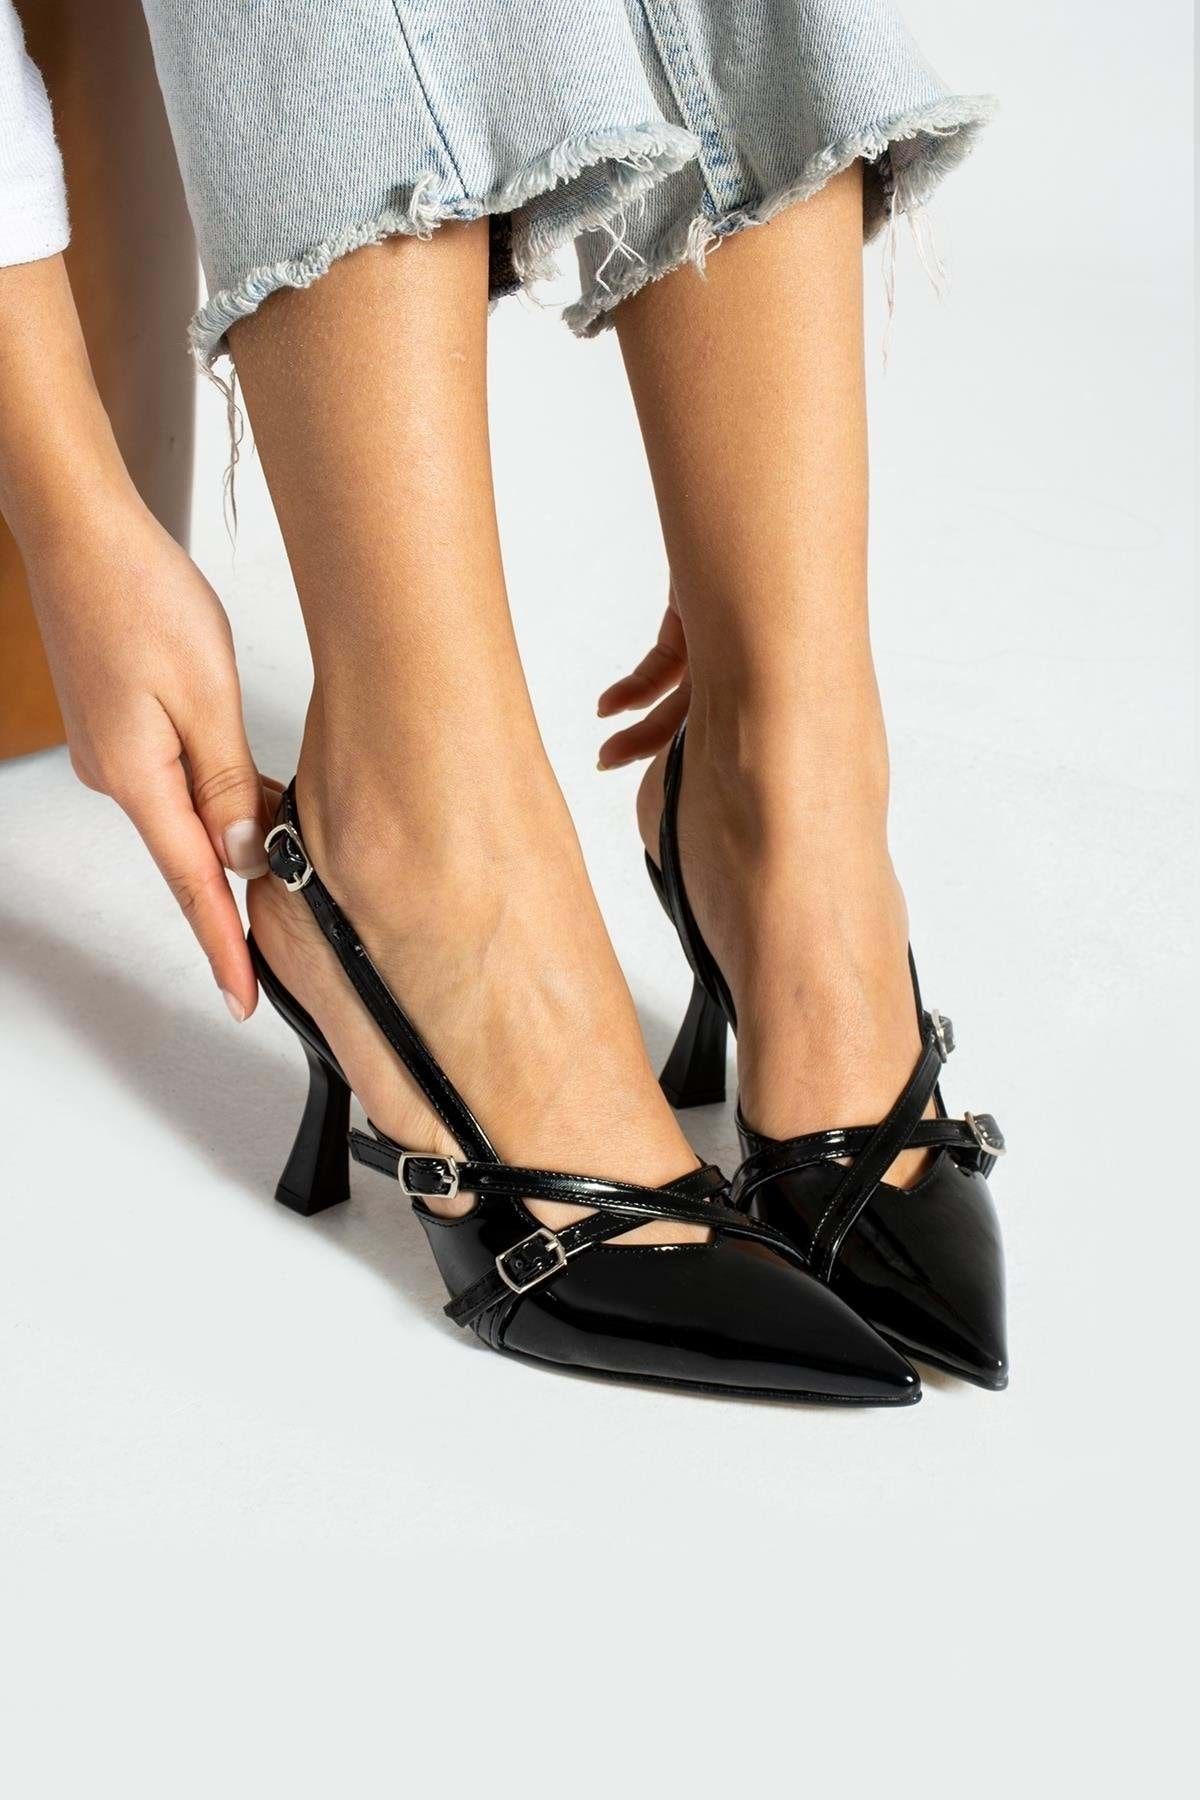 Kids Club Shoes İremsu Çift Toka Detaylı Topuklu Stiletto Kadın Klasik Ayakkabı SİYAH